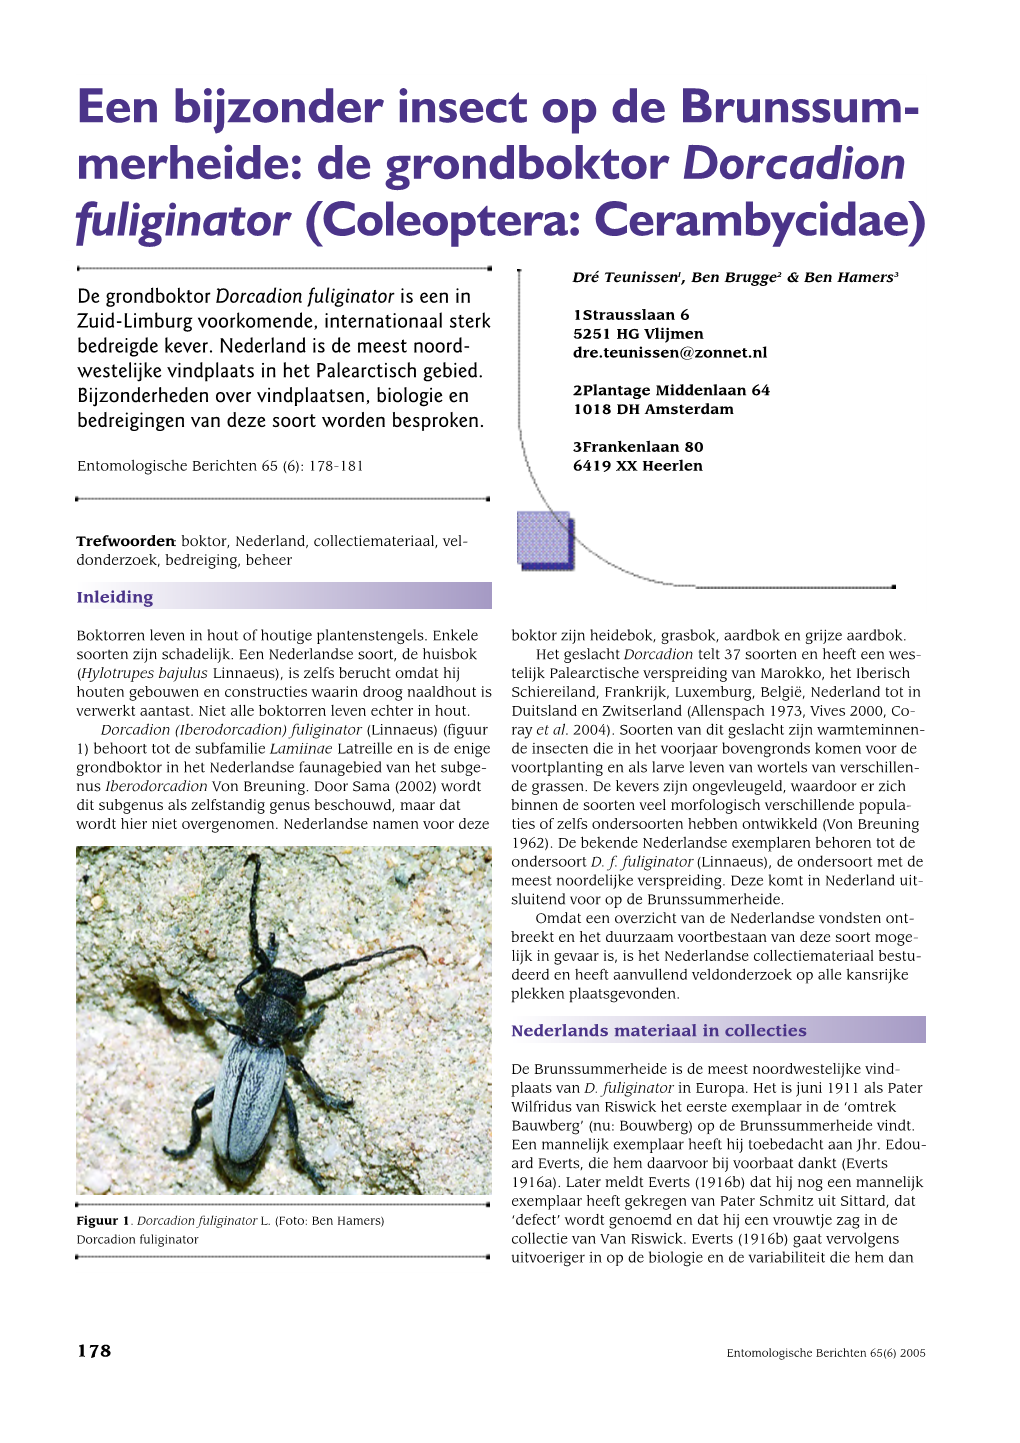 De Grondboktor Dorcadion Fuliginator (Coleoptera: Cerambycidae)